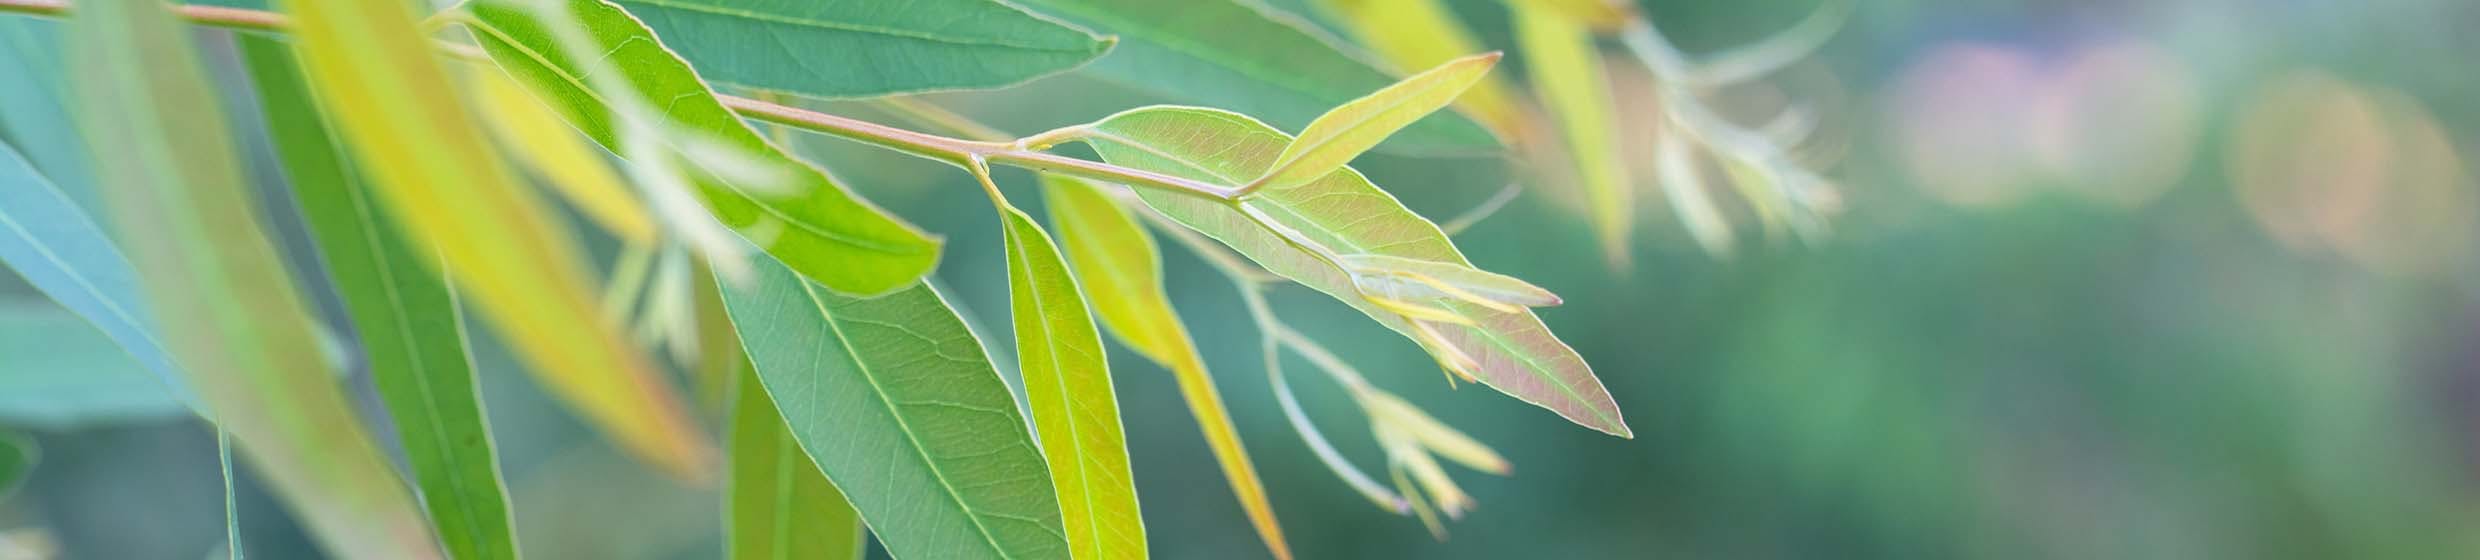 Eucalyptus smithii